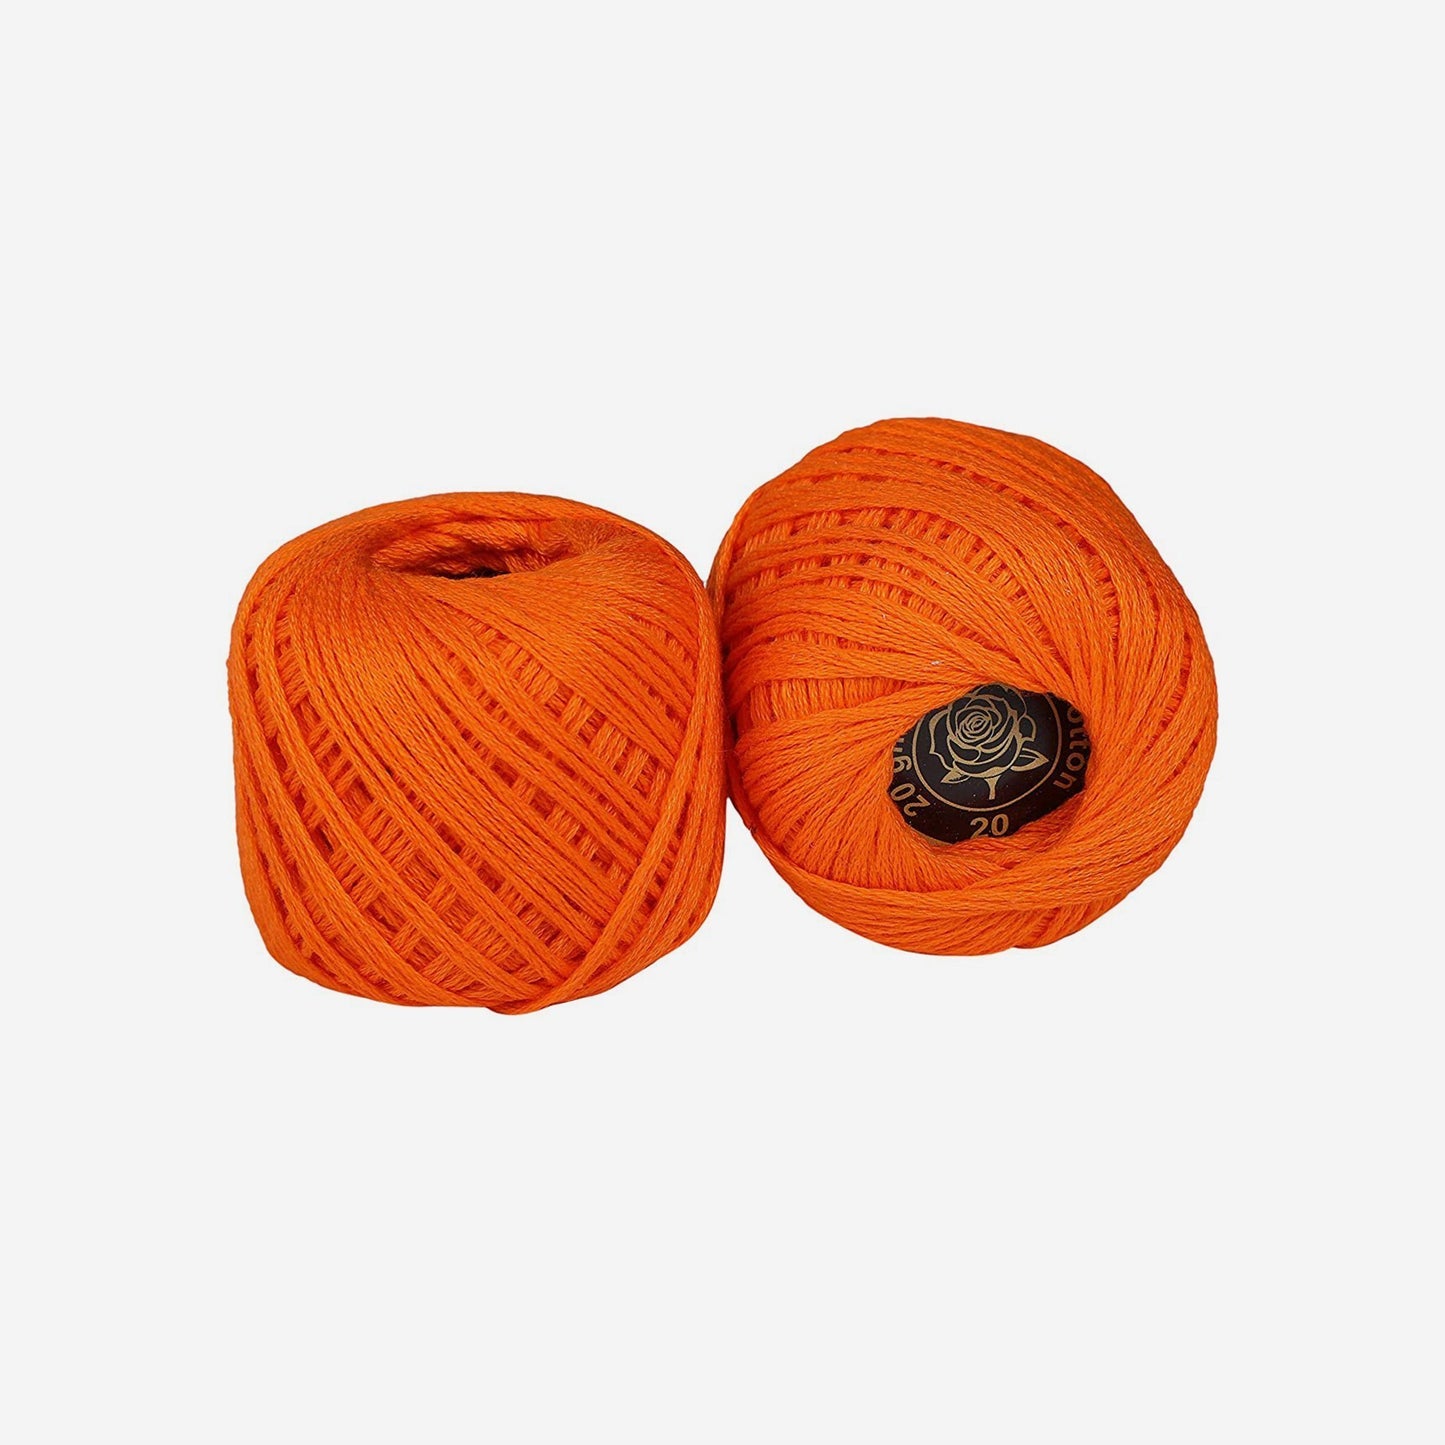 Hand-crochet hoops (Variation 5 )